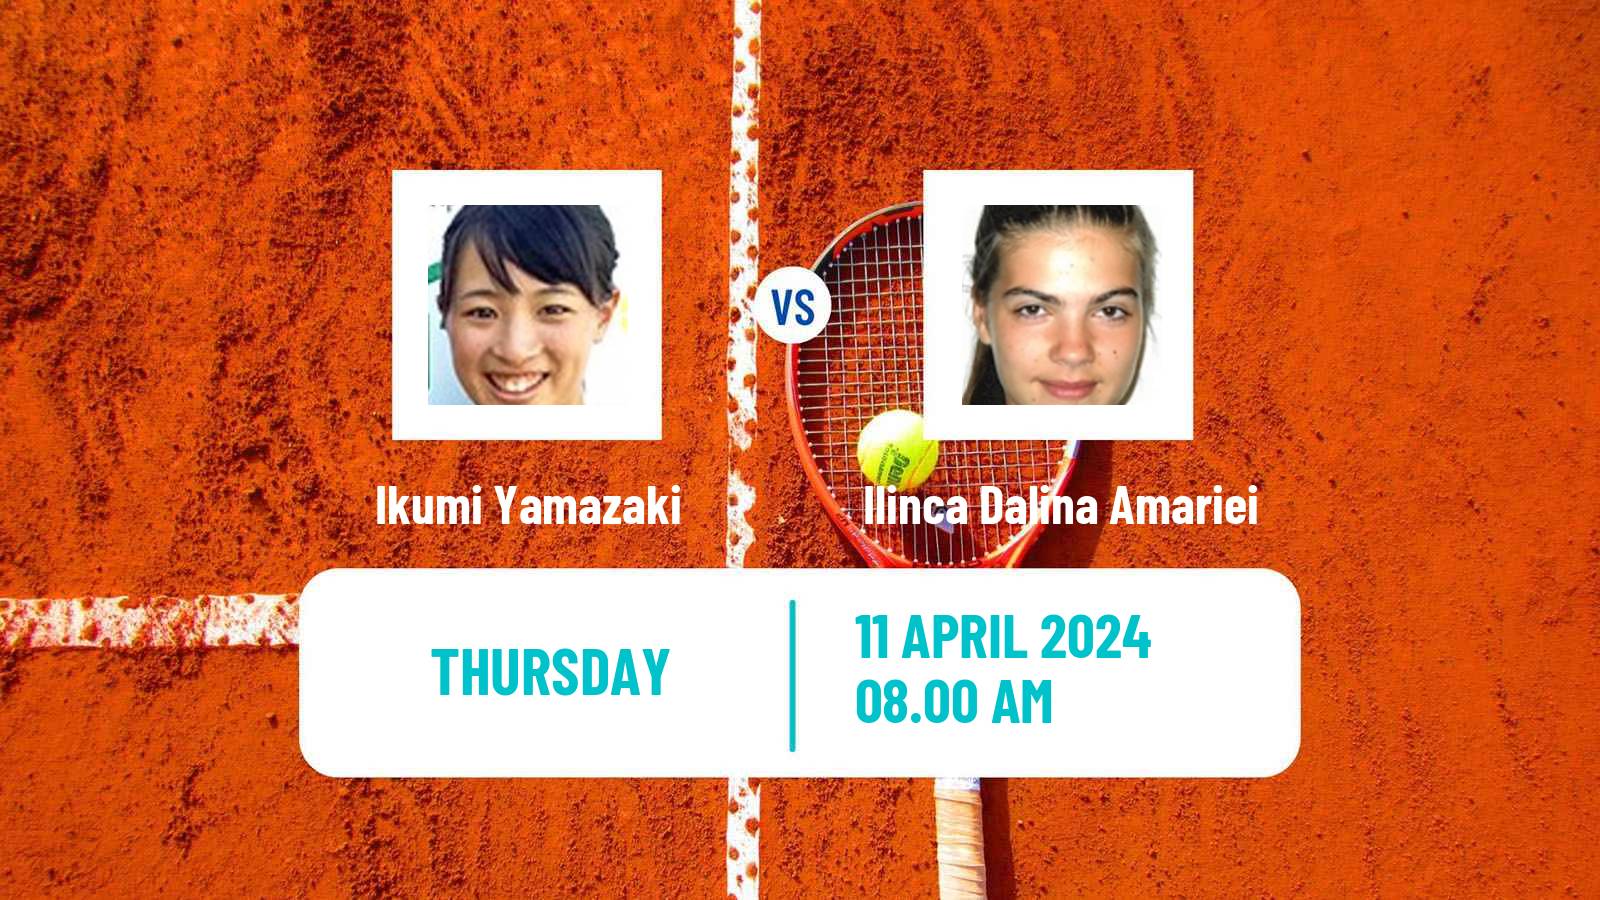 Tennis ITF W35 Hammamet 4 Women Ikumi Yamazaki - Ilinca Dalina Amariei